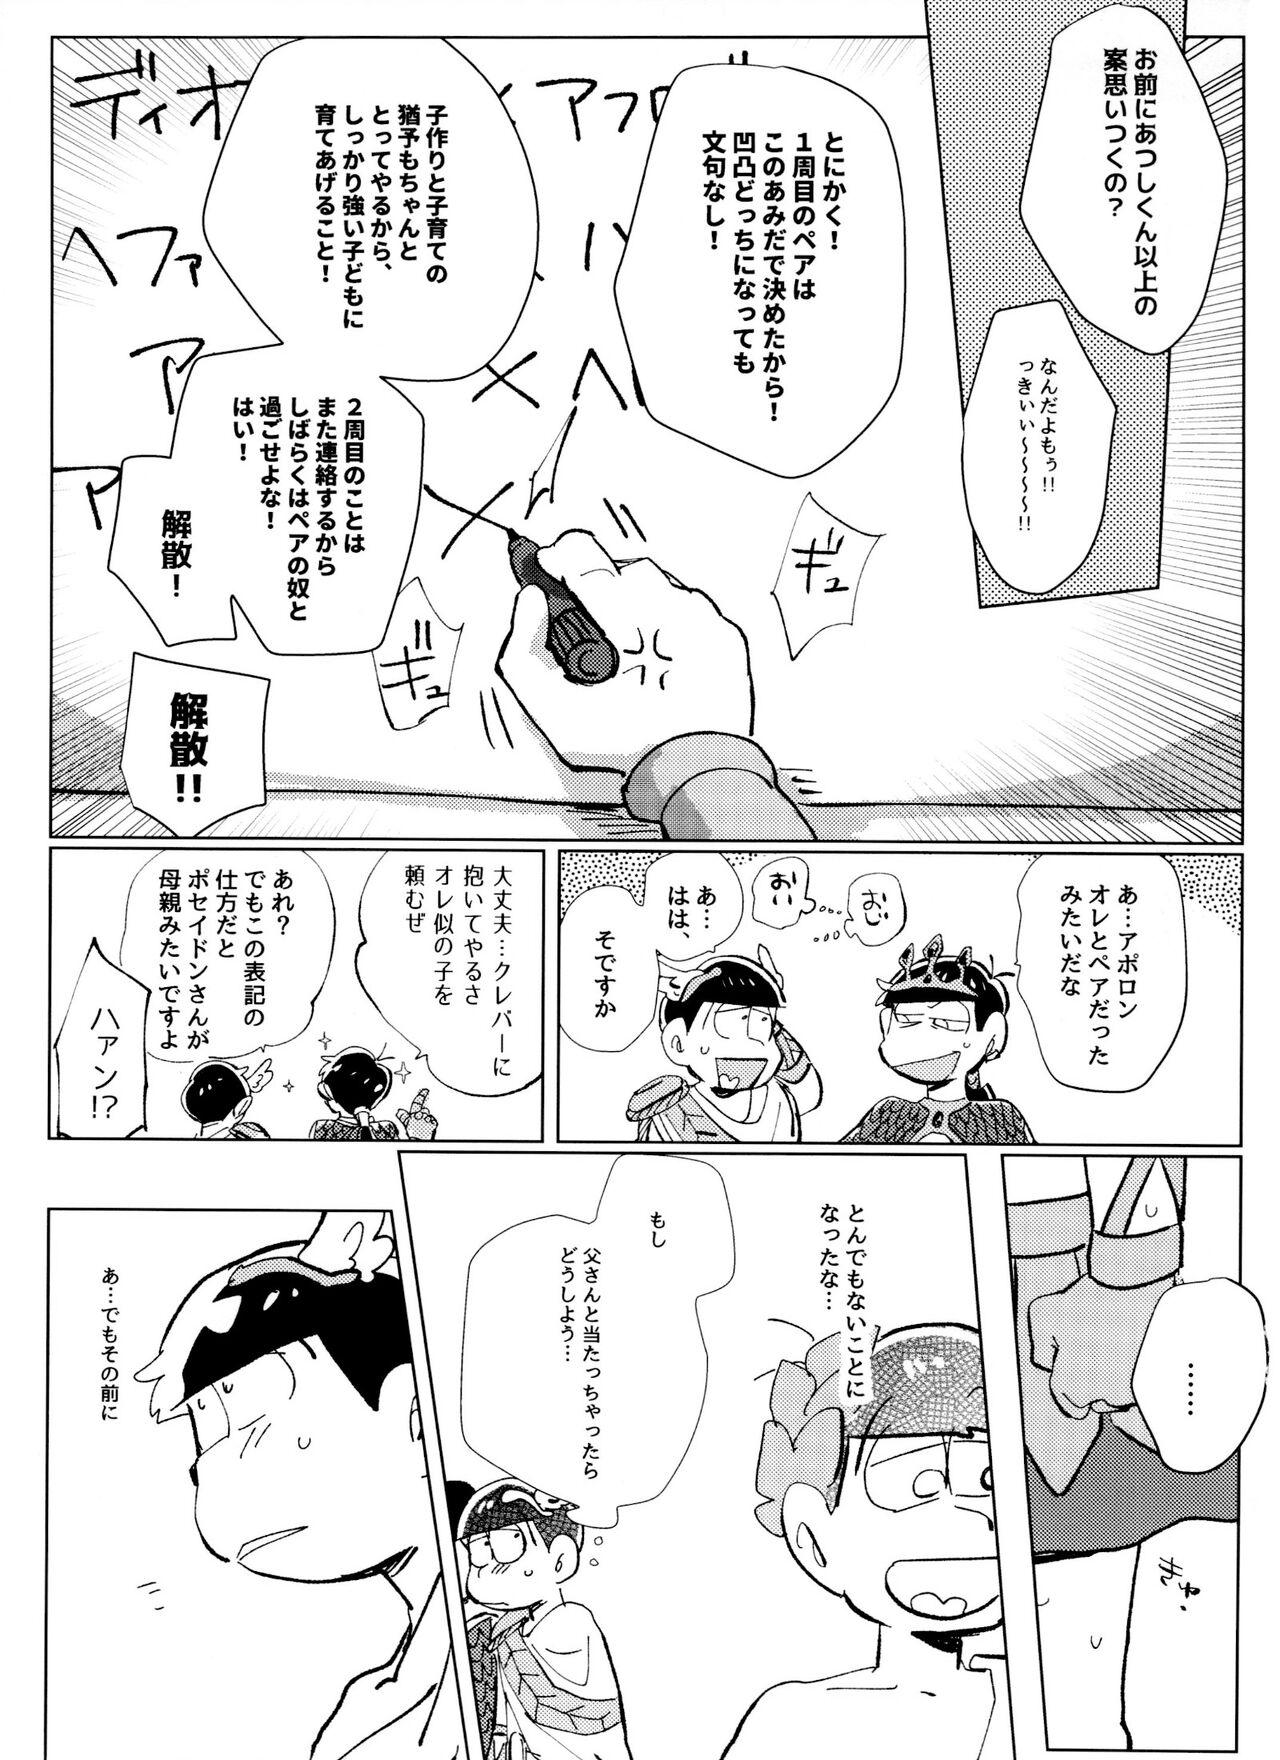 Foda [Handa gote sakka (handa)] Zeuapo-ko-tsukuri shinwa (Osomatsu-San) - Osomatsu-san Glory Hole - Page 6